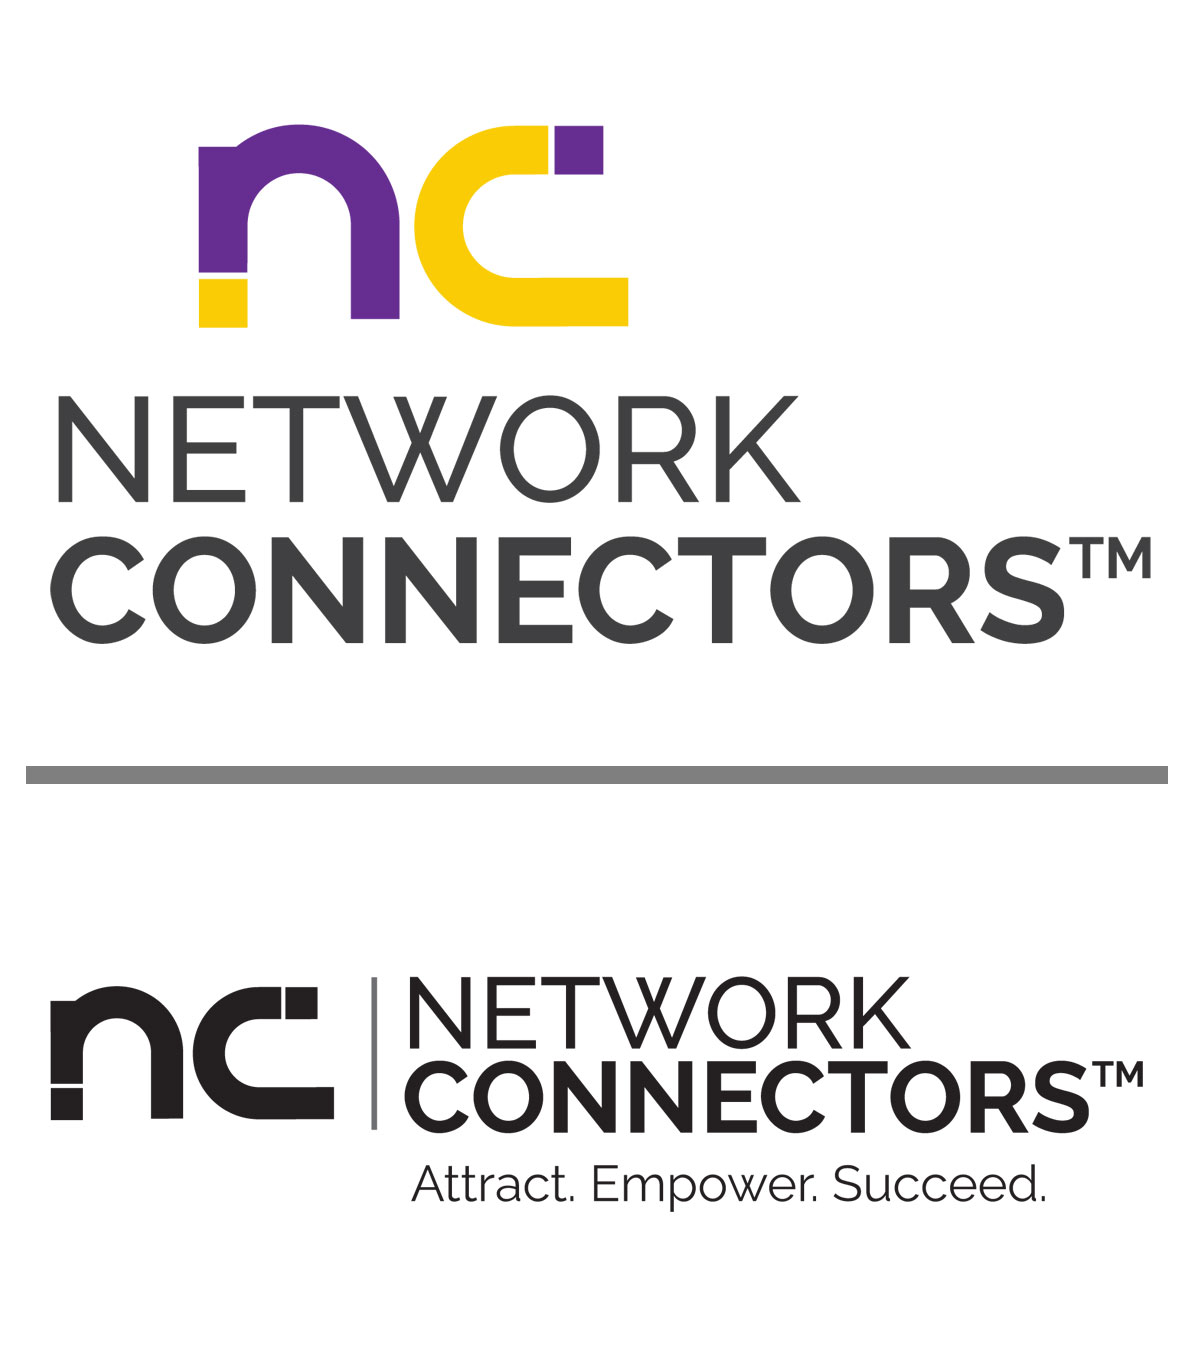 Network Connector Logos